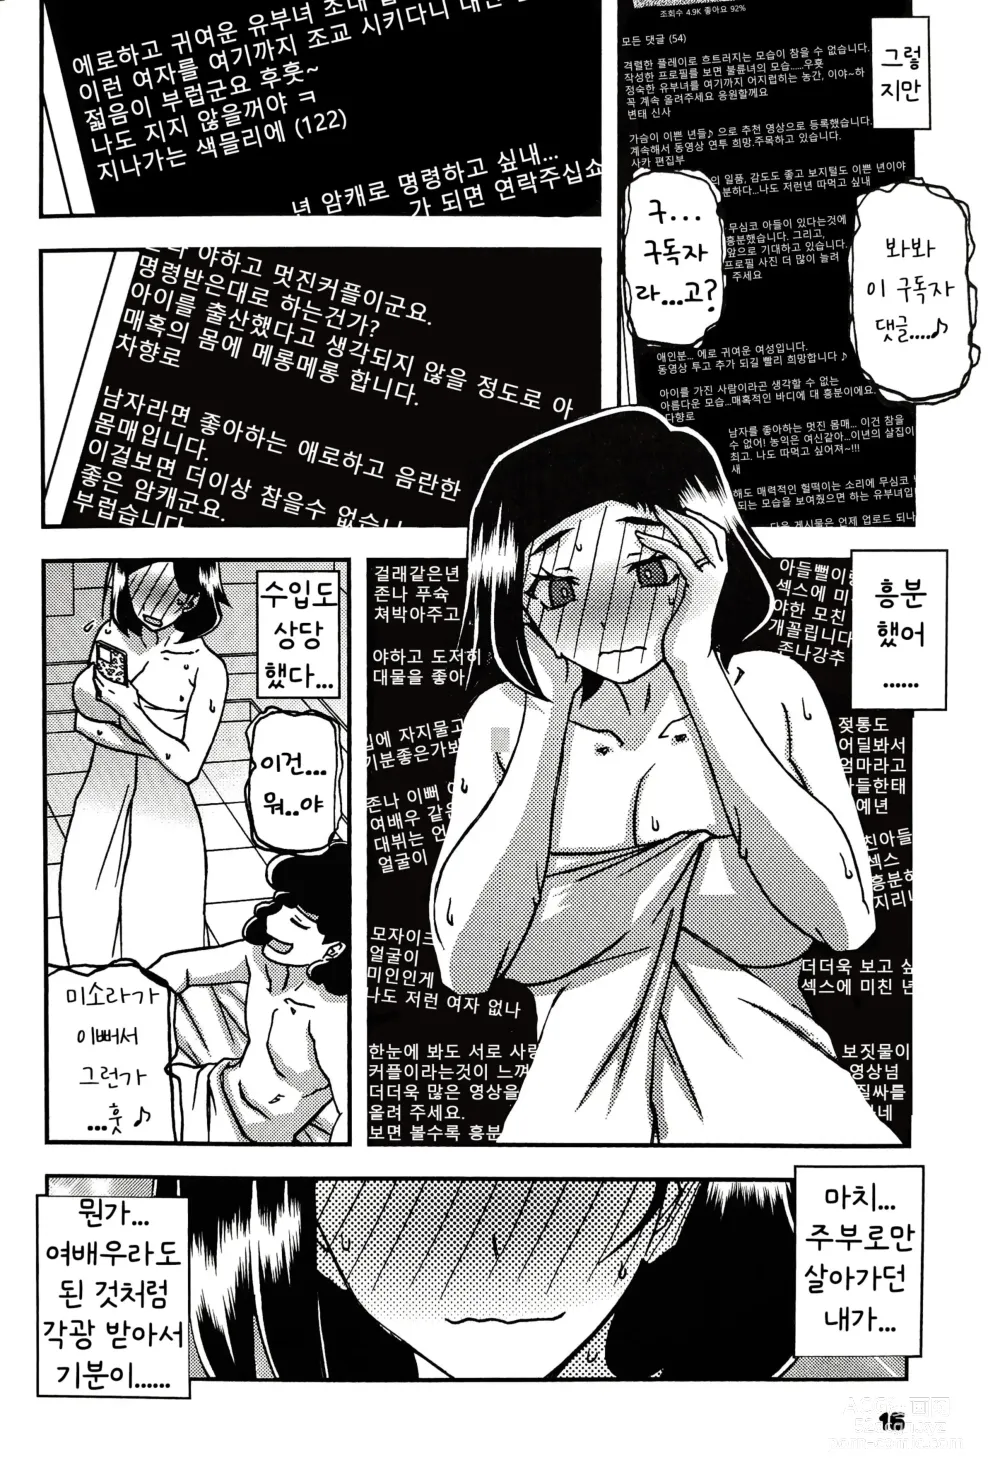 Page 15 of doujinshi Akebi no Mi - Misora AFTER